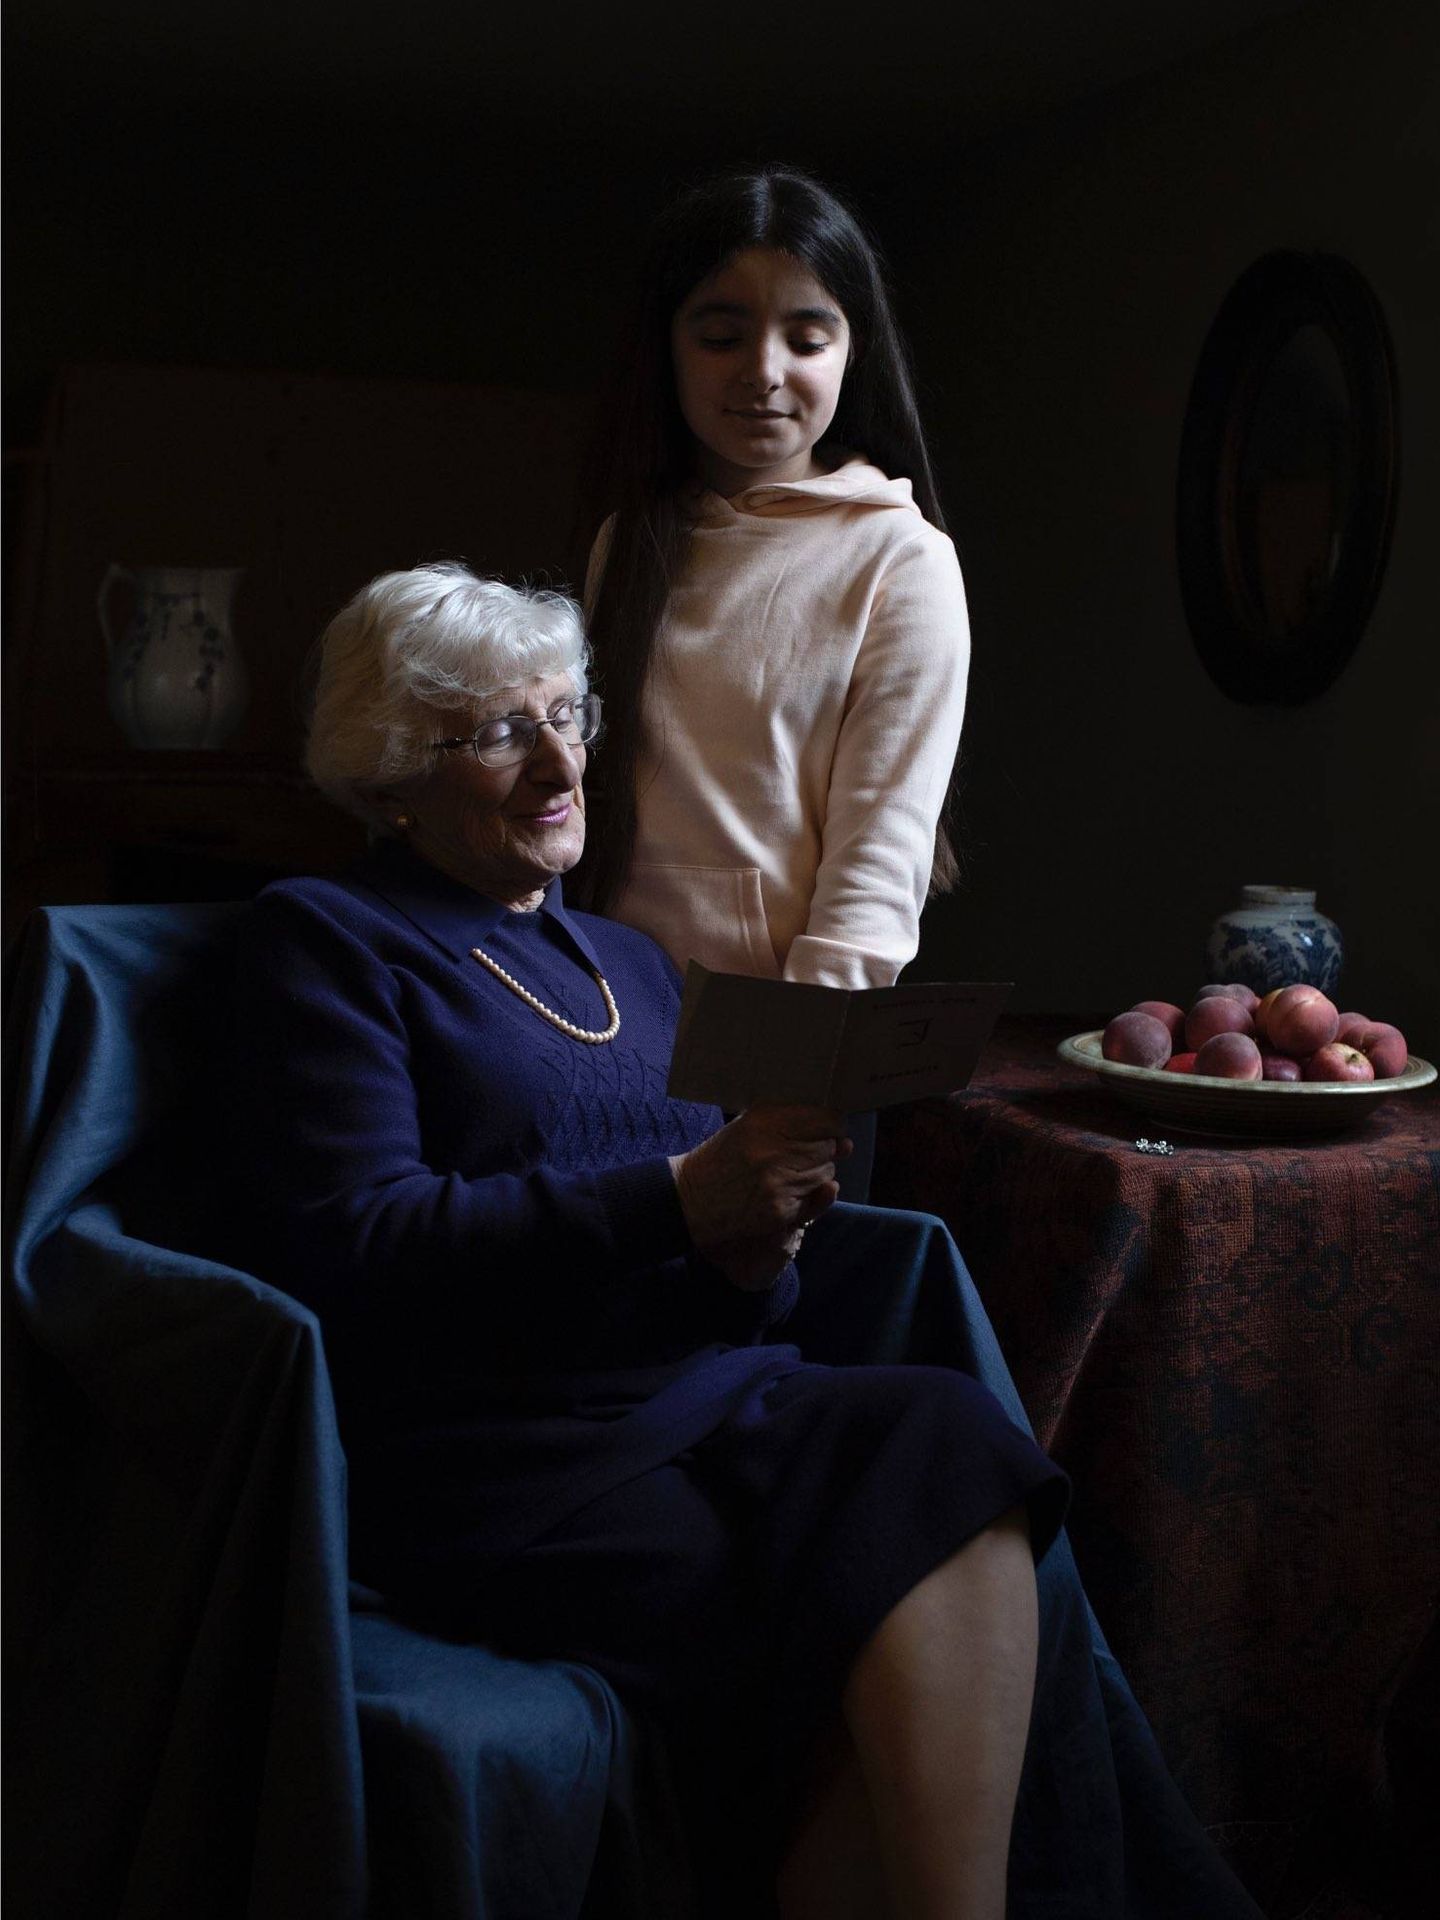 Fotografía realizada por Kate Middleton. Yvonne Bernstein, superviviente del Holocausto, y su nieta. (Kensington Palace)